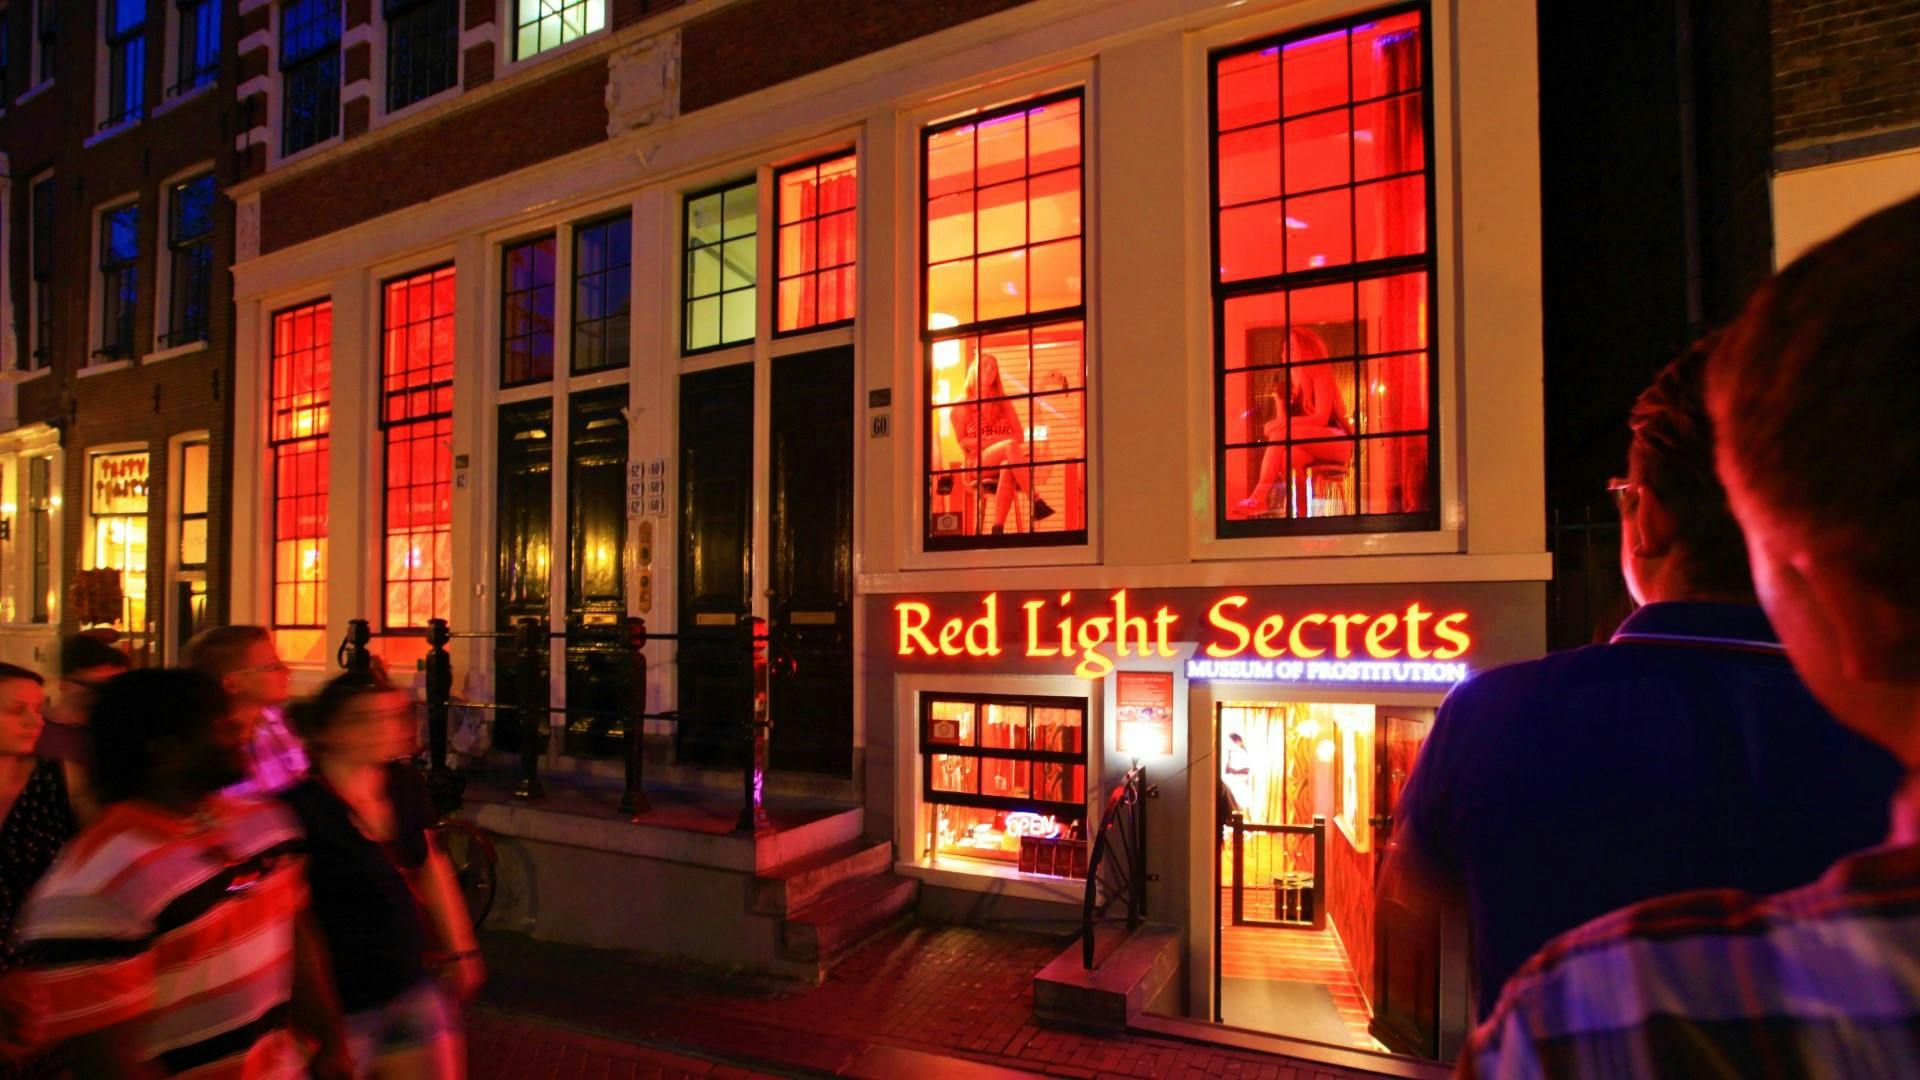 Ingresso para o Museu da Prostituição do Red Light Secrets